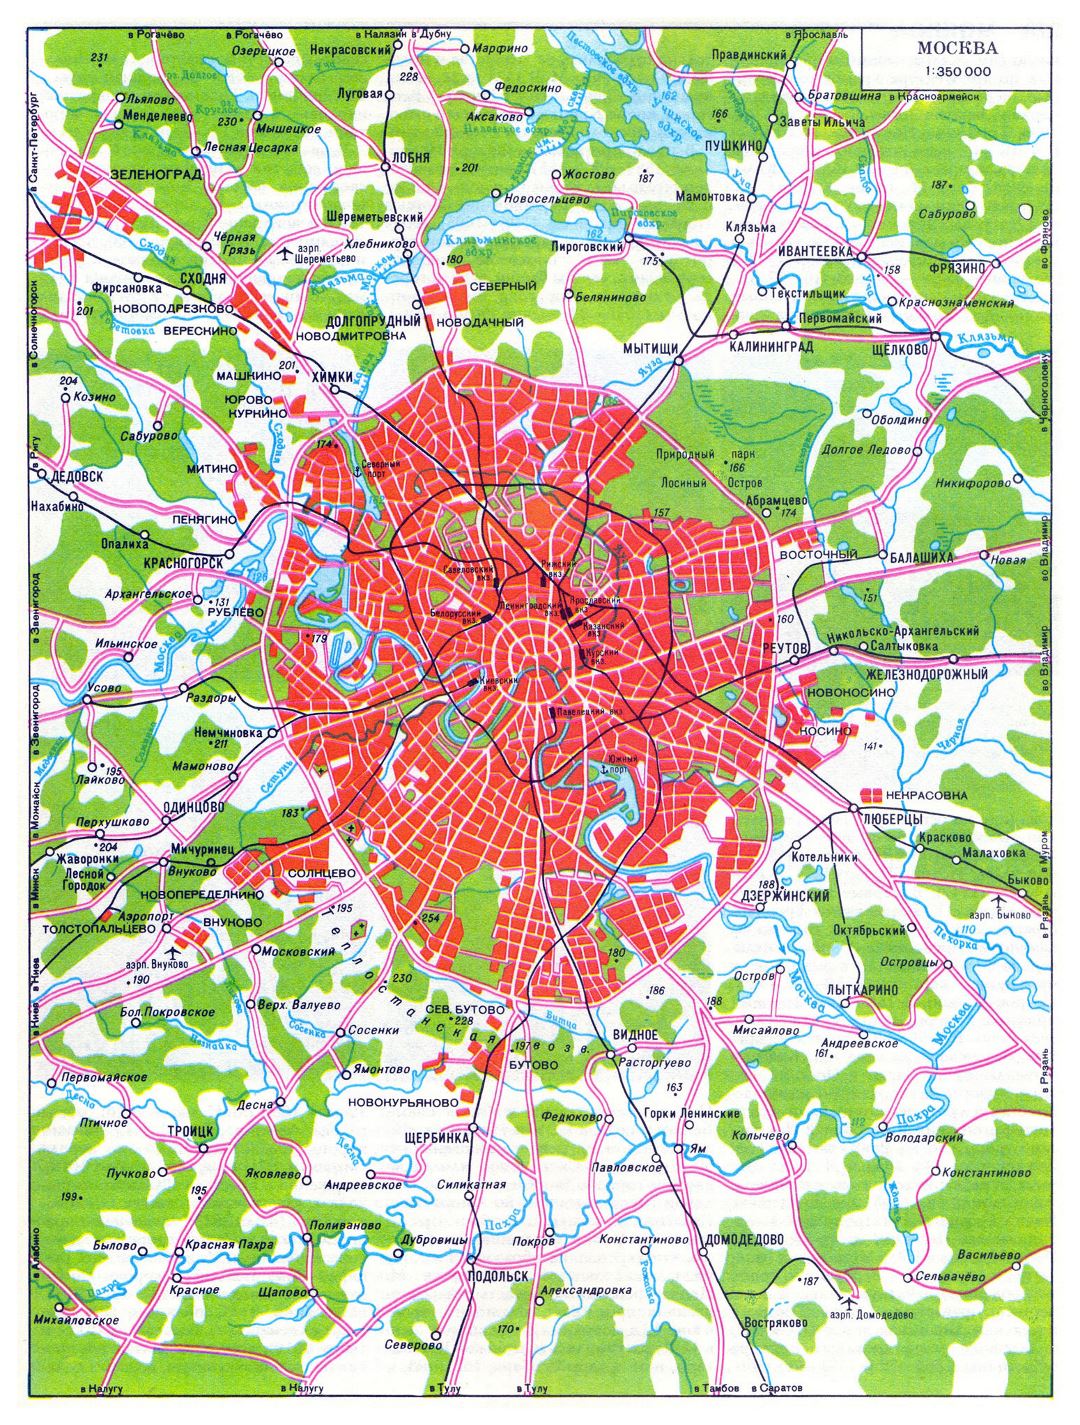 Grande mapa de tránsito de ciudad de Moscú en ruso